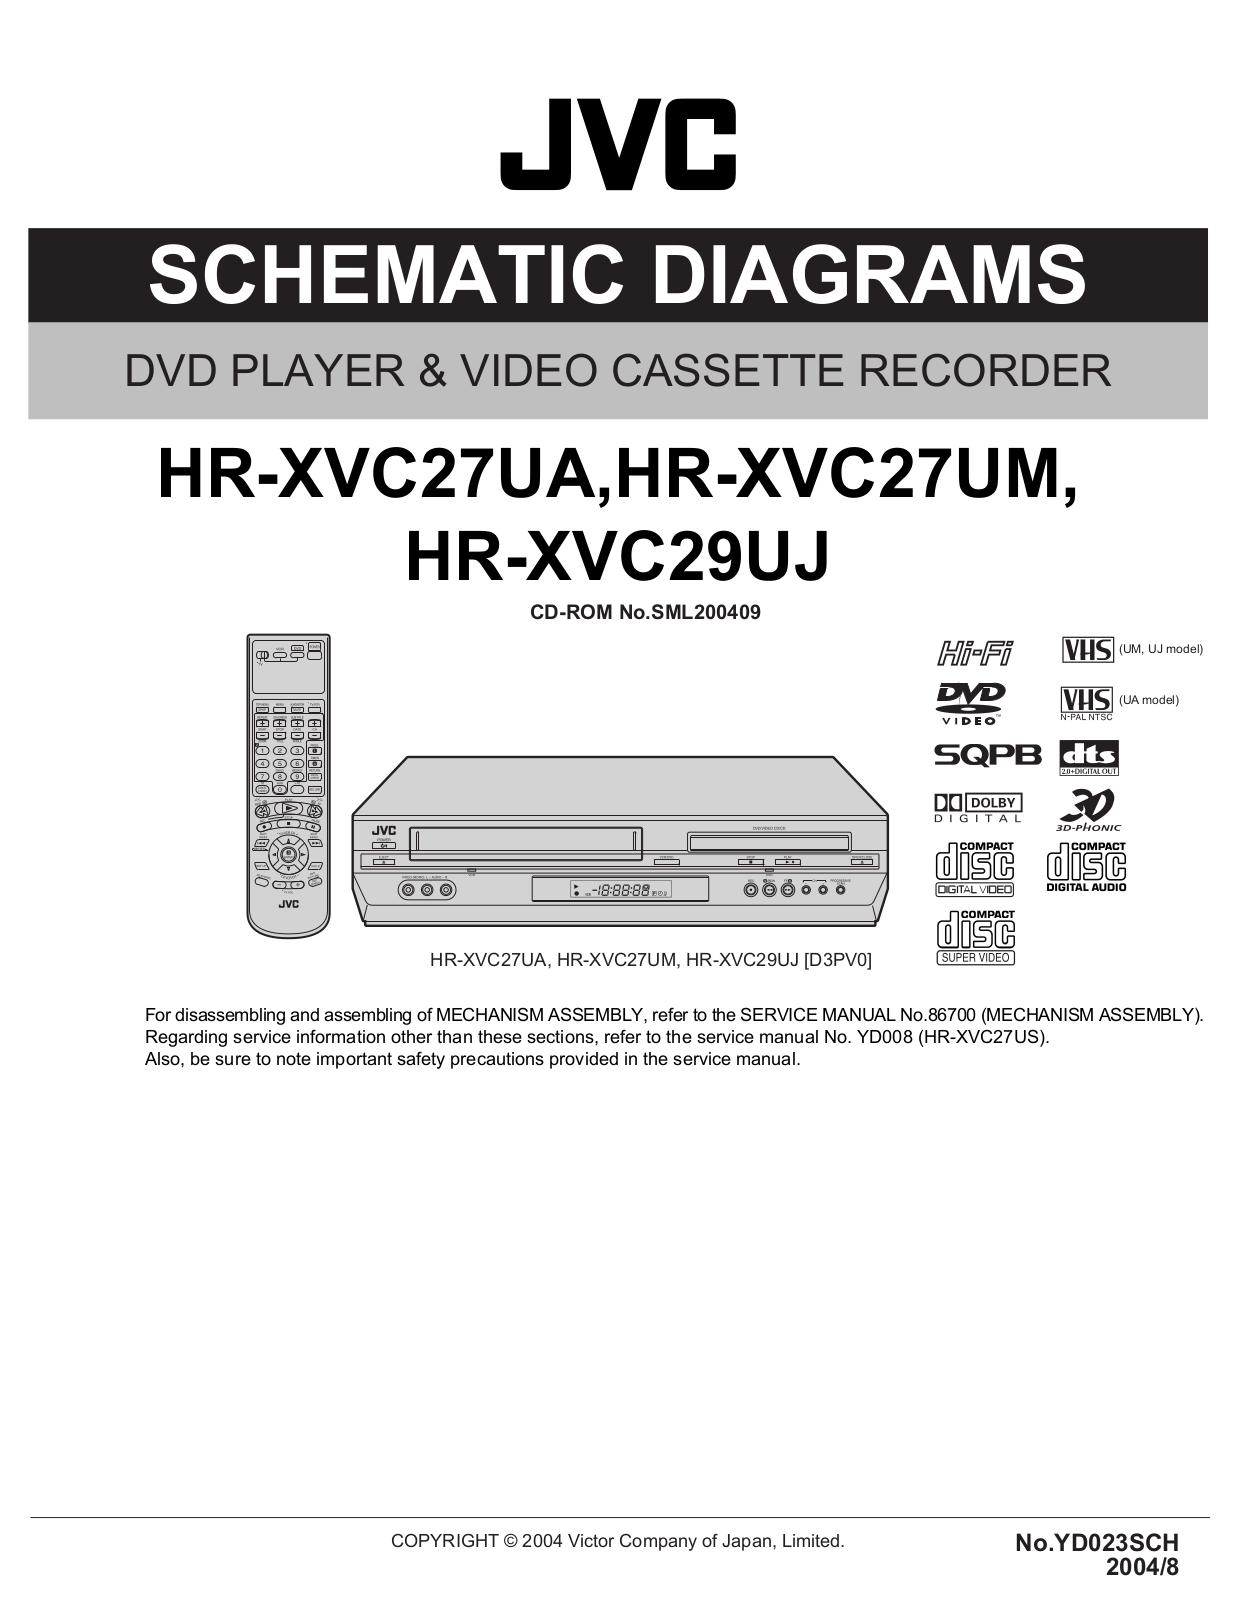 JVC HR-XVC27UA, HR-XVC27UM, HR-XVC29UJ Schematics